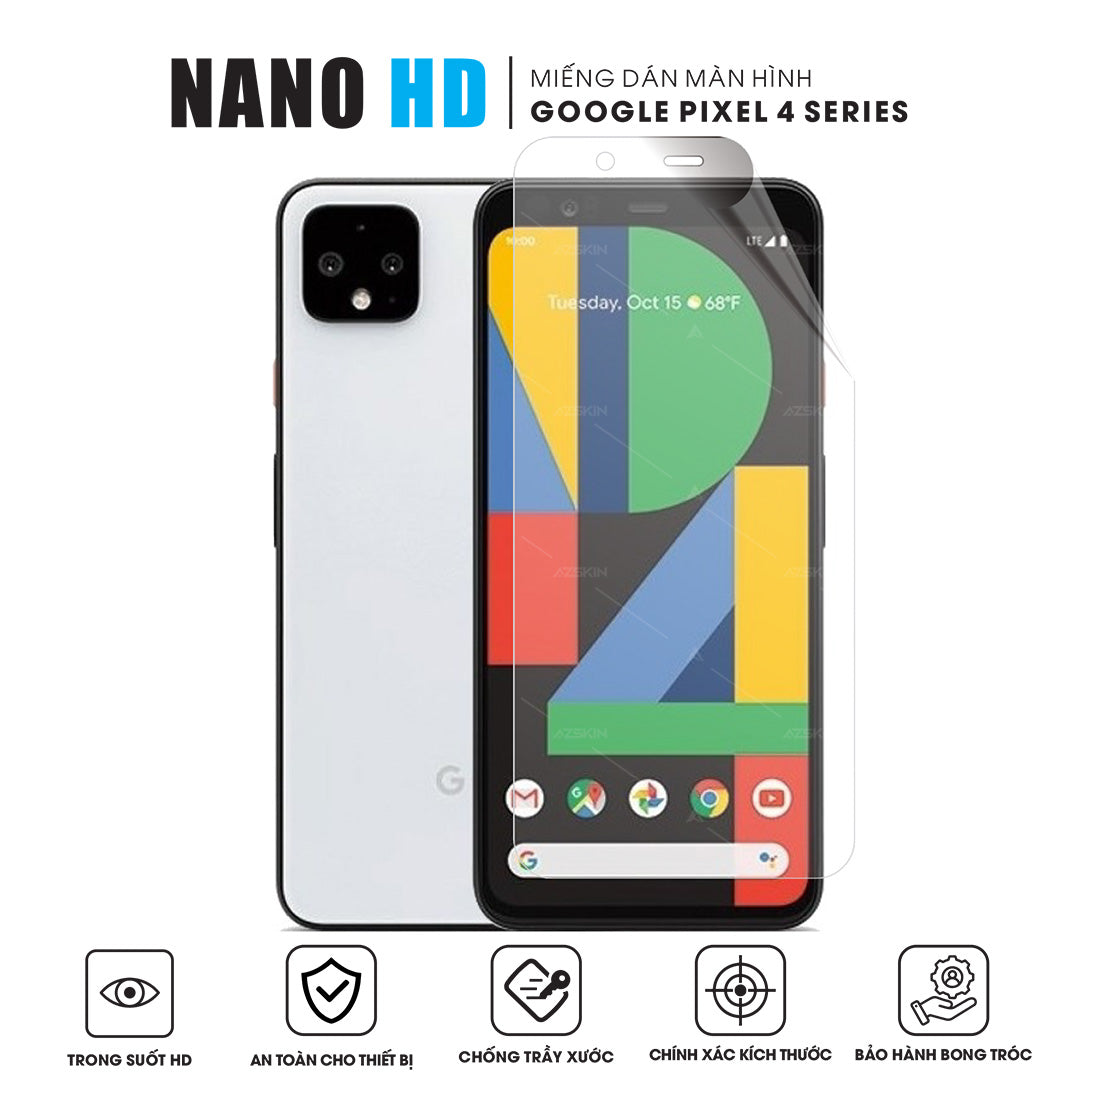 Miếng dán màn hình Nano HD cho google pixel 4